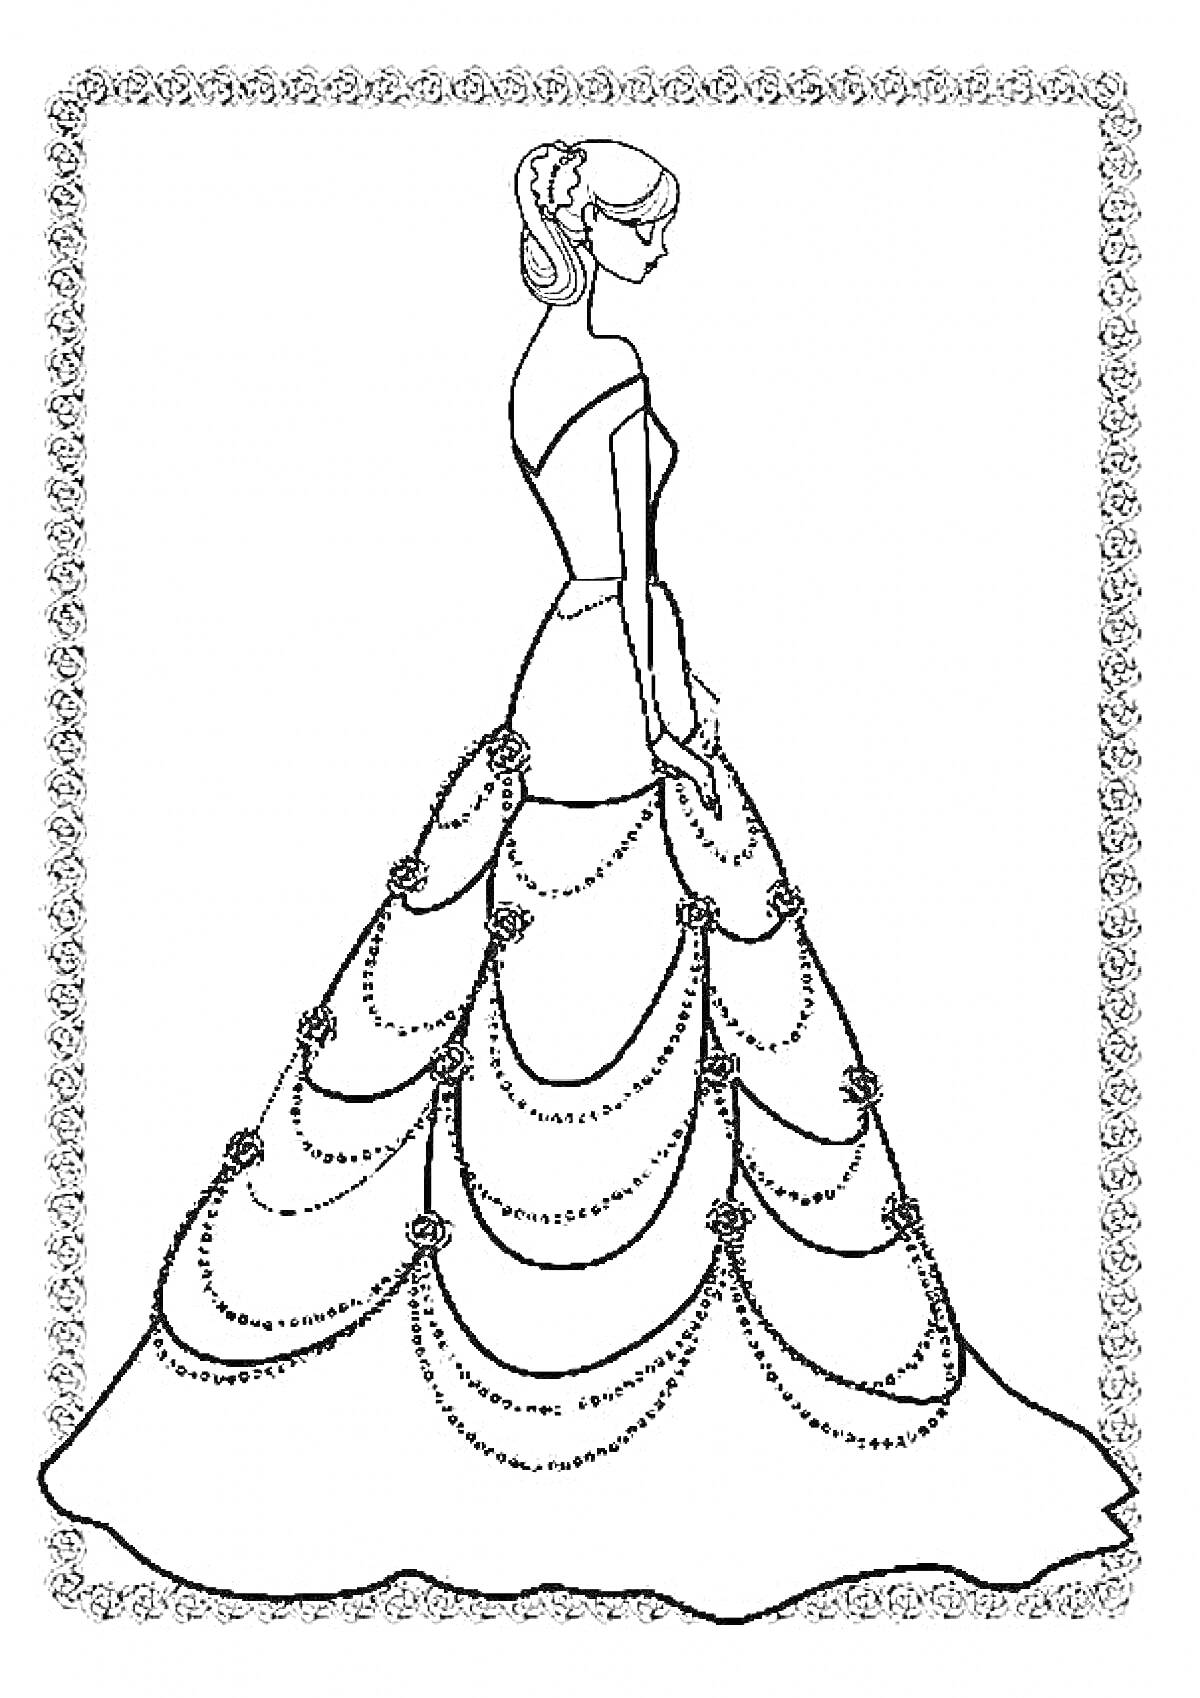 Раскраска Девушка в длинном бальном платье с цепочками и цветами, в рамке с декоративным узором